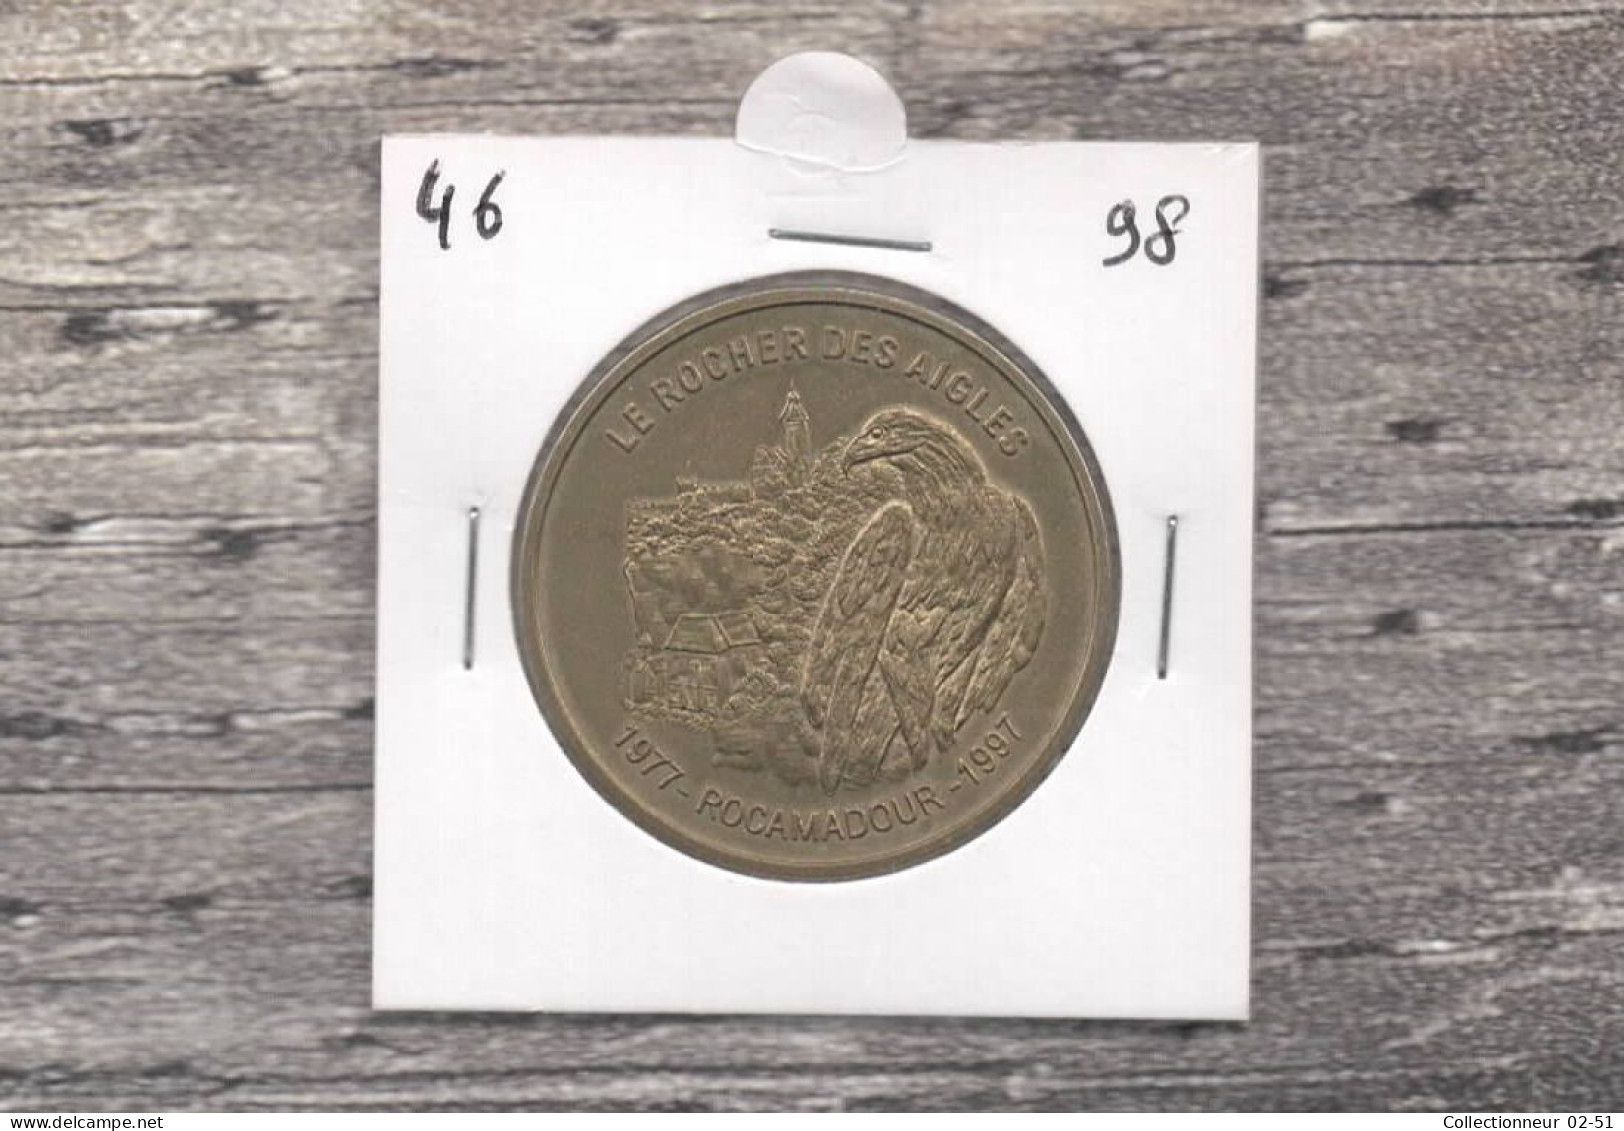 Monnaie De Paris : Le Rocher Des Aigles - 1998 - Ohne Datum